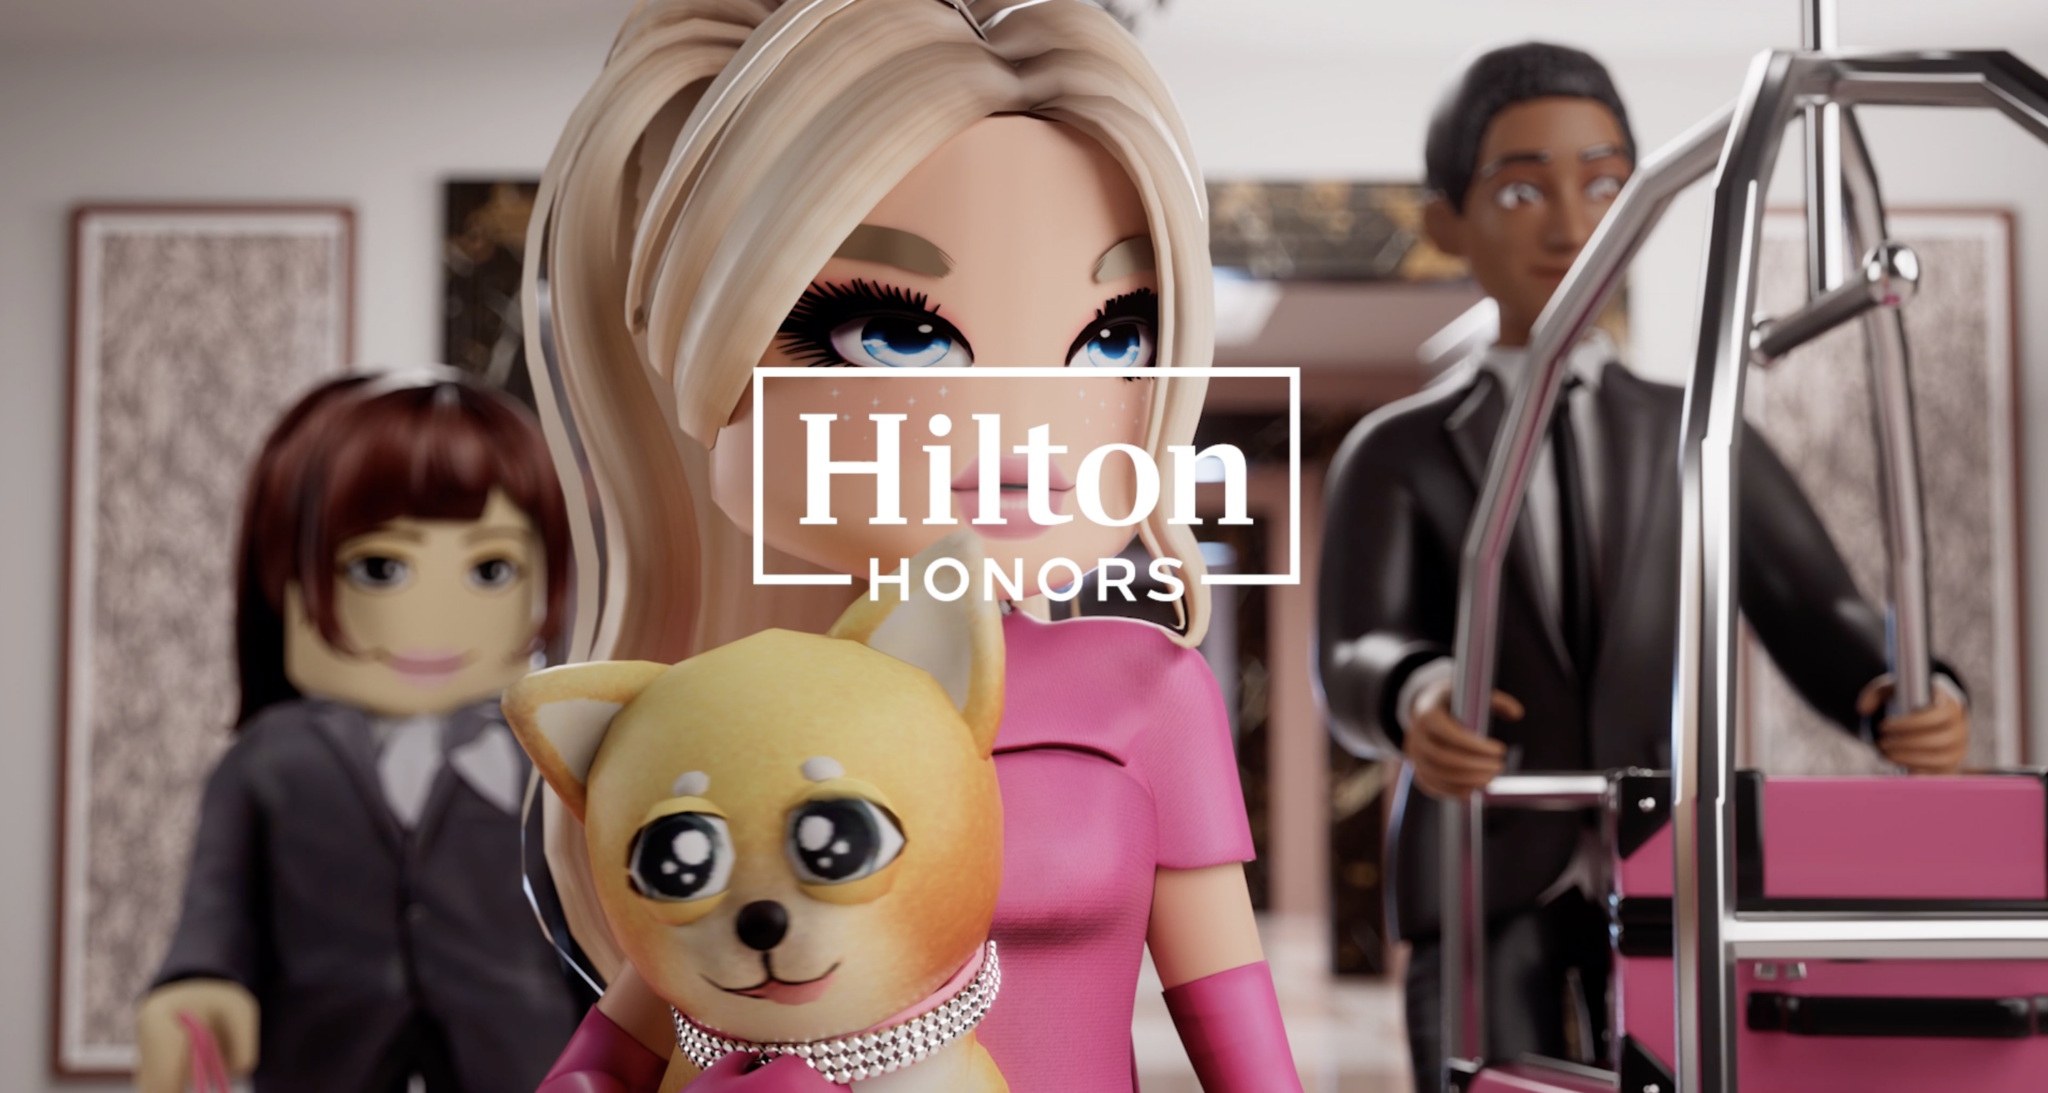 Hilton Honors Roblox partnership